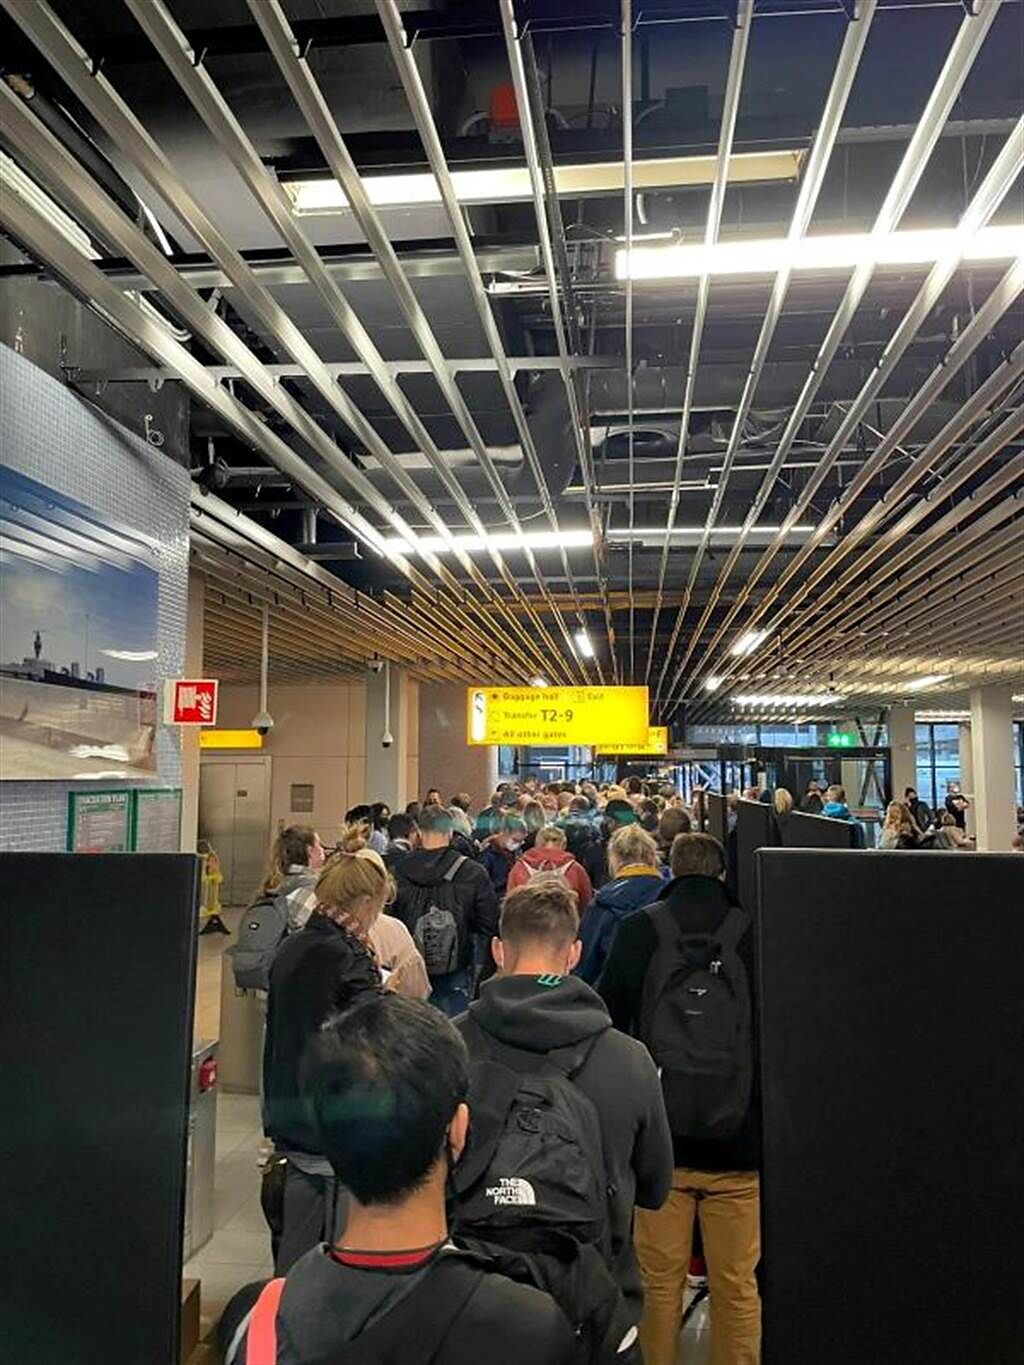 2架自南非啟程、26日飛抵荷蘭阿姆斯特丹的班機，機上可能有高達85人感染新冠肺炎。荷蘭當局強調會嚴格篩檢，因此造成機場為乘客堵塞。(圖/路透社)